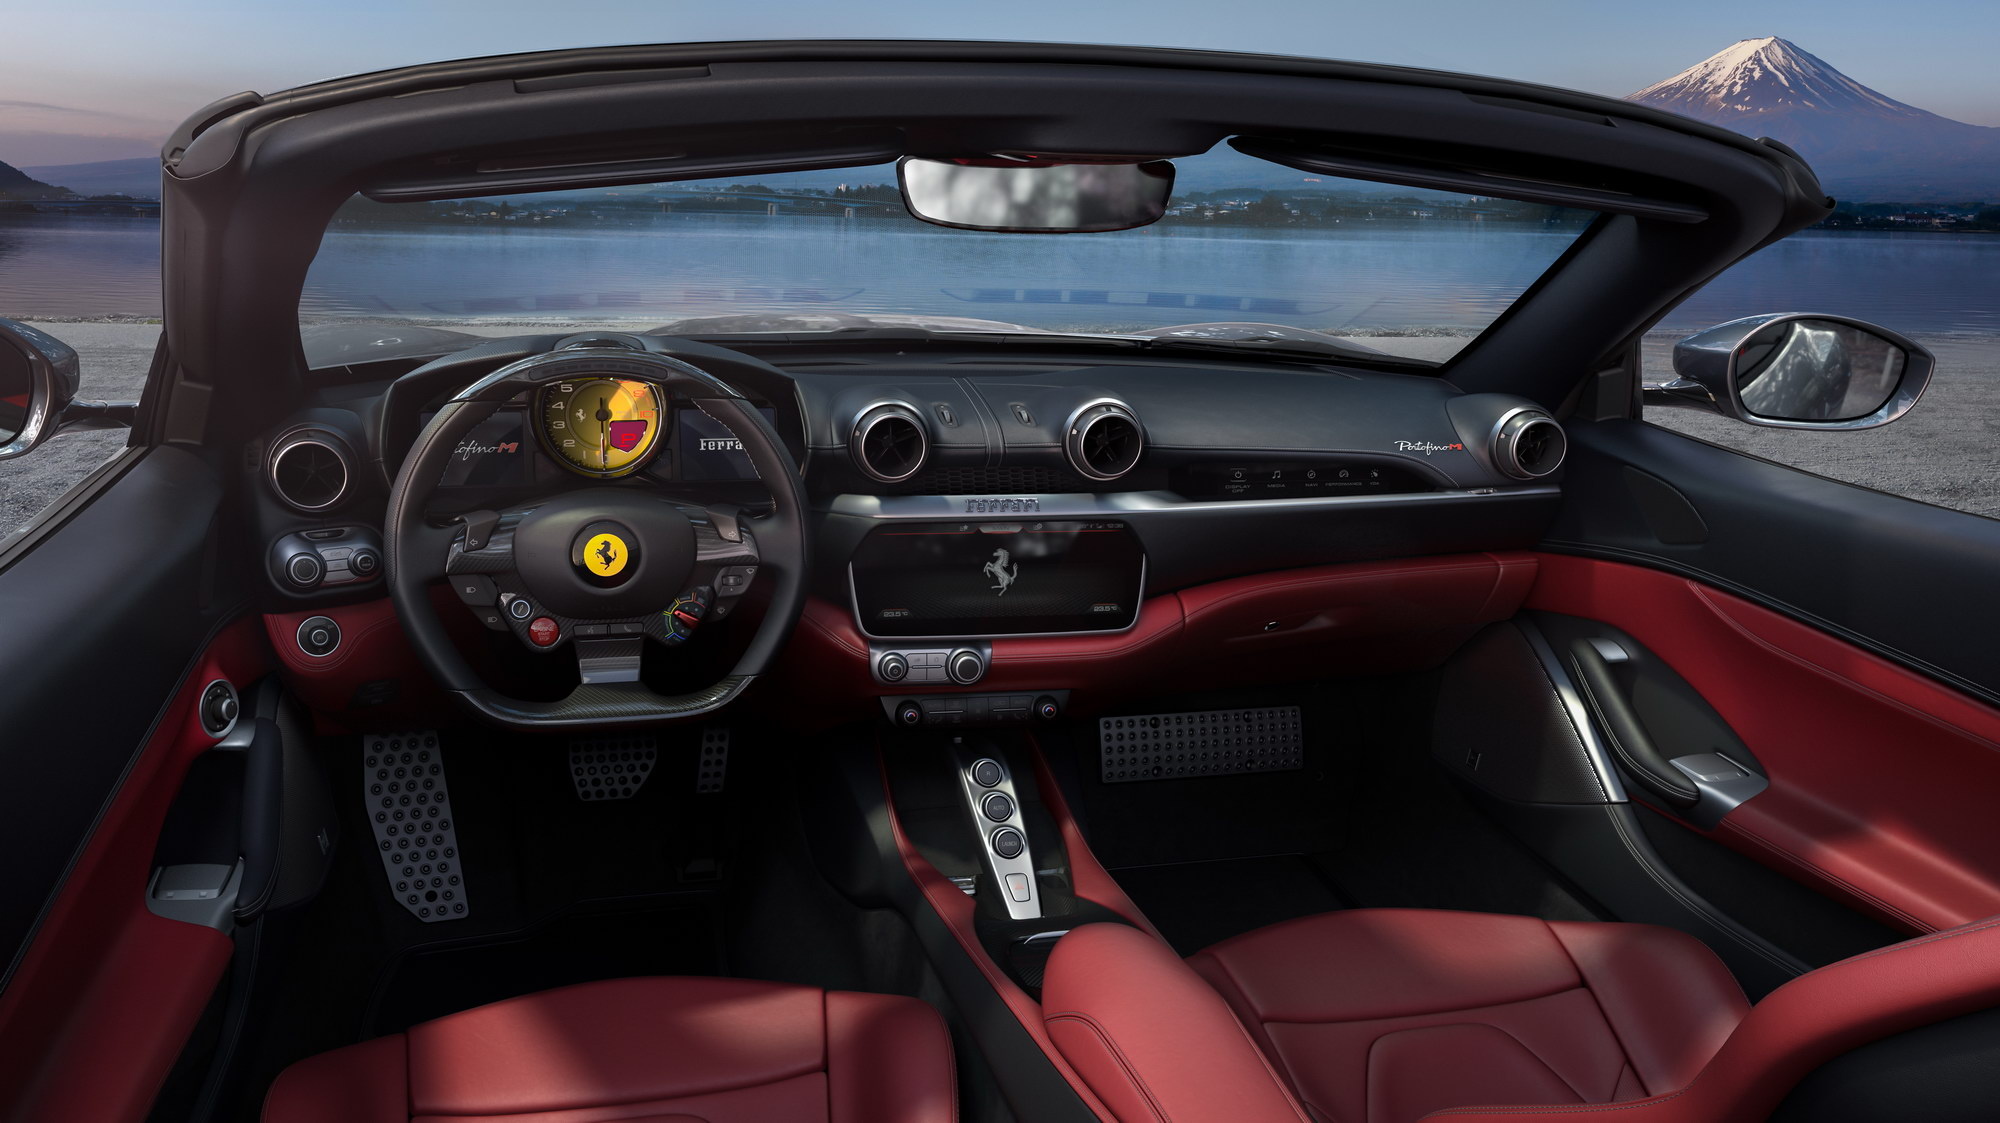 Ferrari Portofino M. Nyheter från Ferrari 2020. Exklusiva bilar och supersportbilar i vår guide.